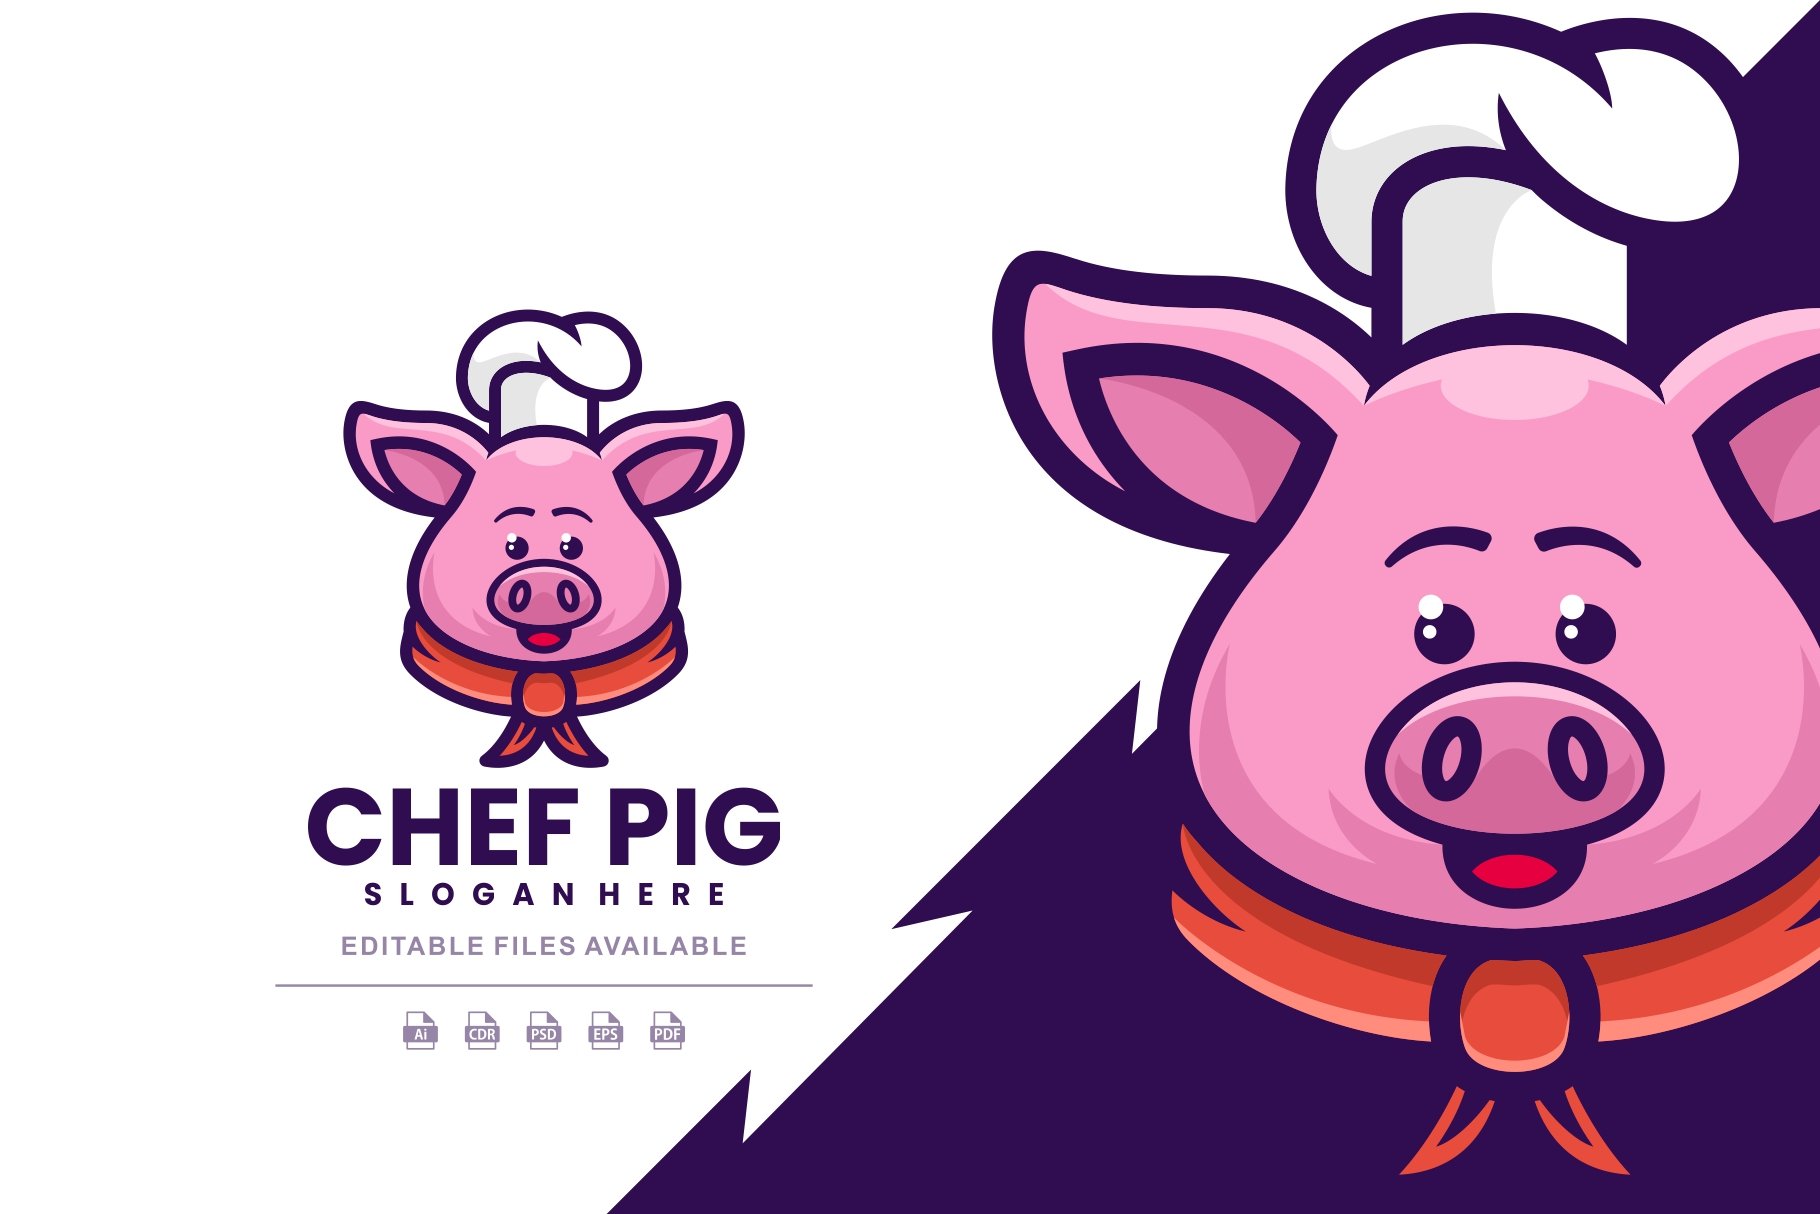 Chef Pig Cartoon Logo cover image.